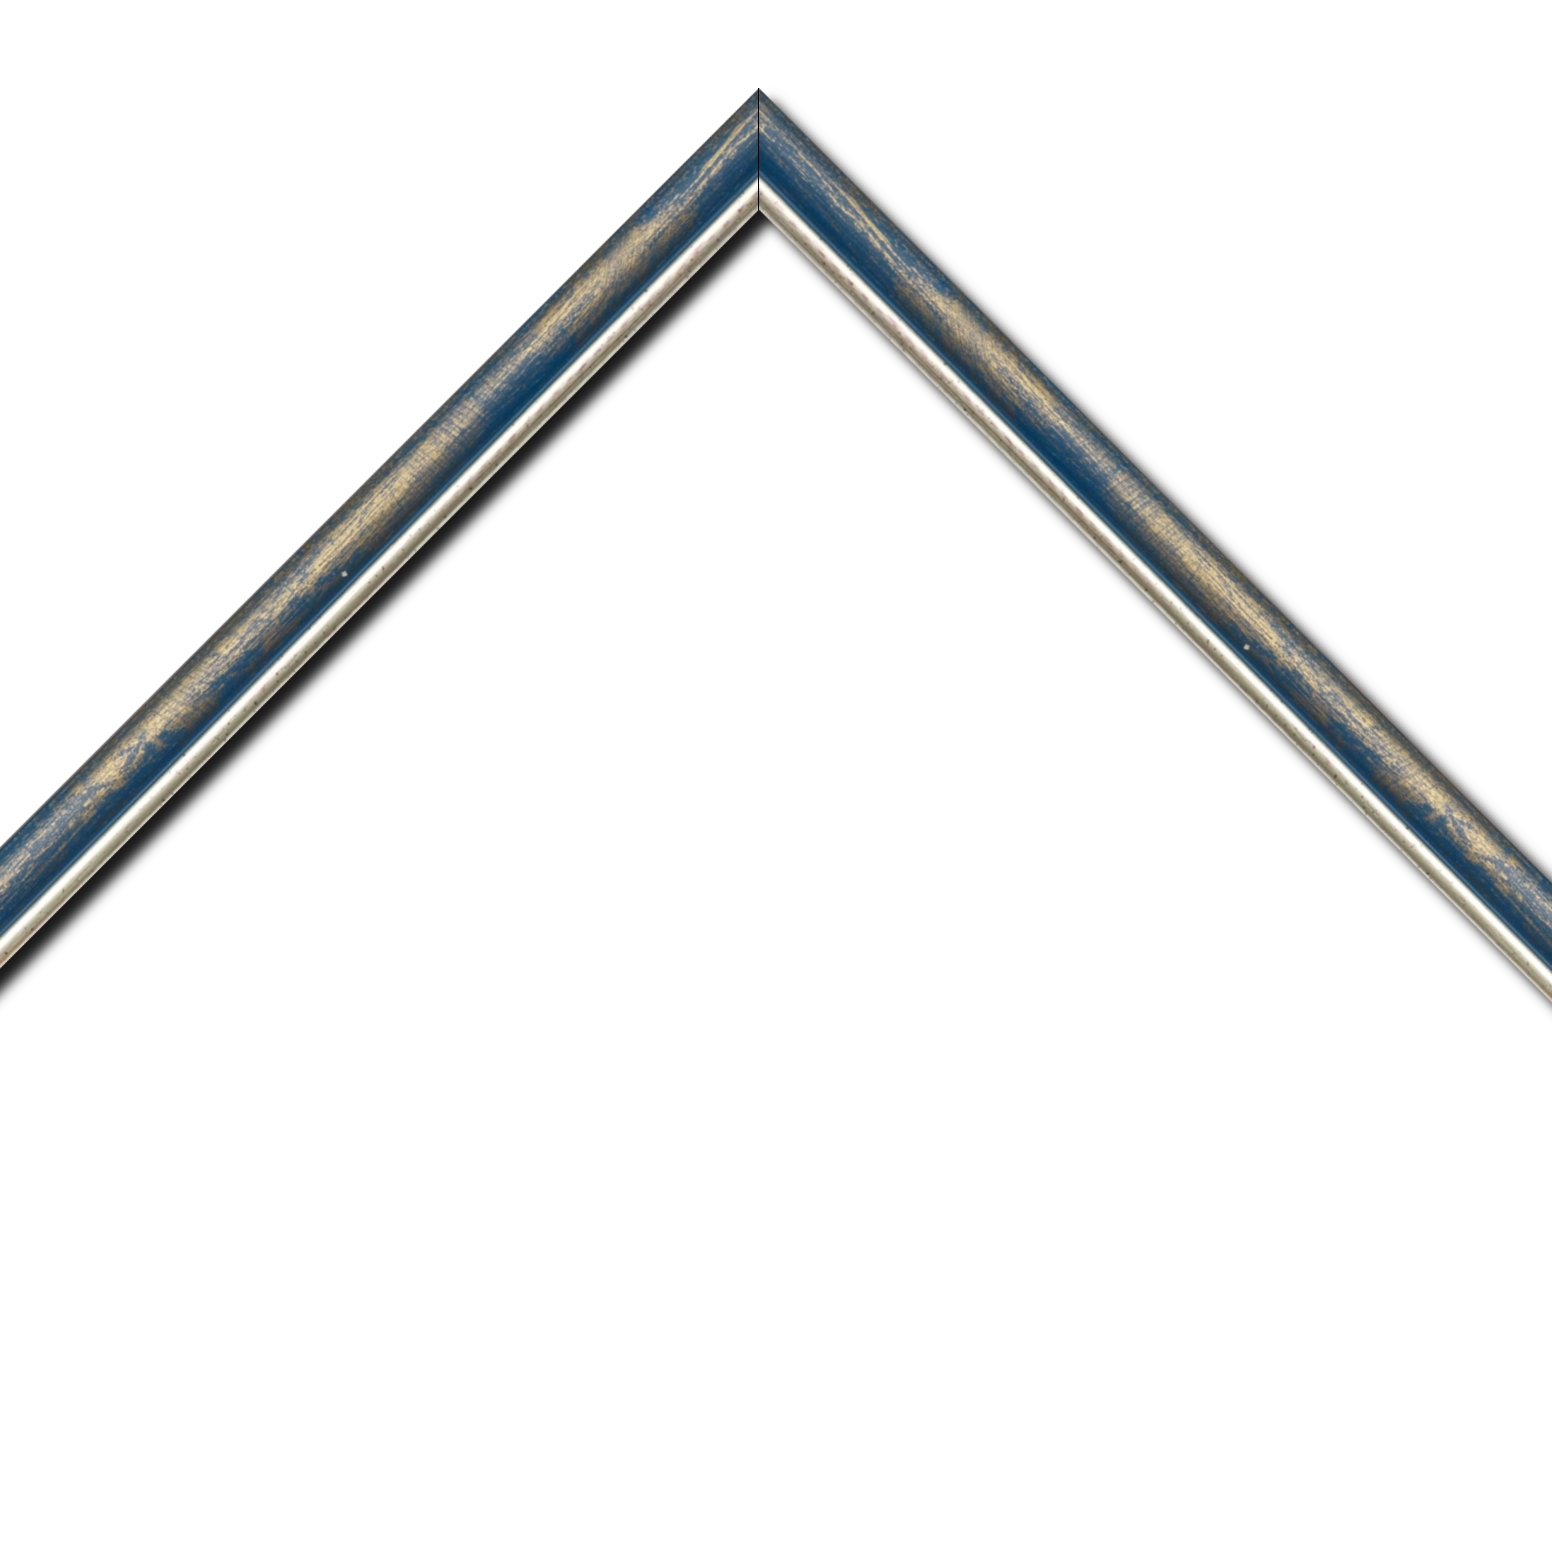 Baguette bois profil arrondi largeur 2.1cm  couleur bleu fond or filet argent chaud